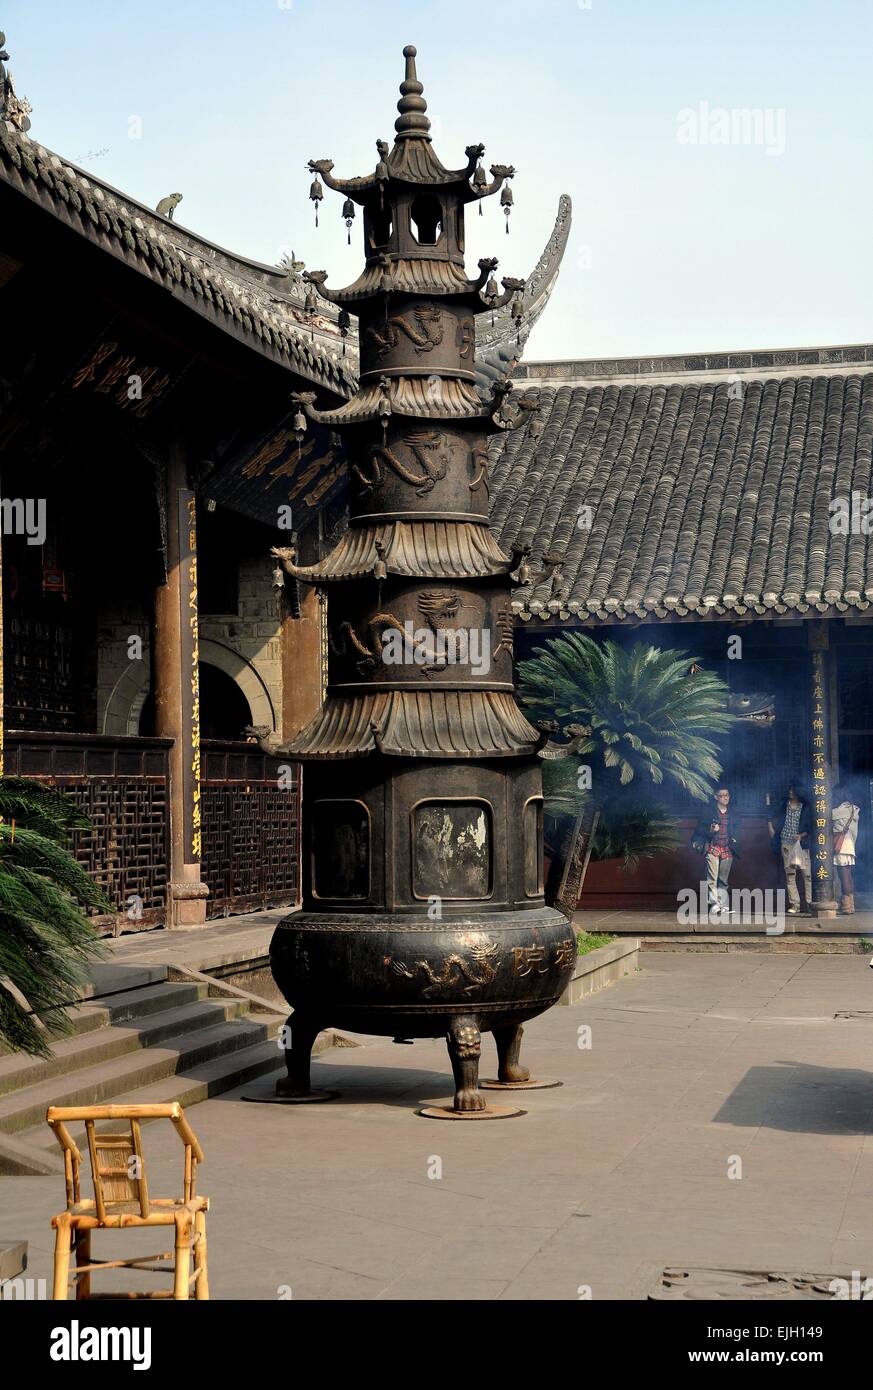 Xindu, Cina: Pagoda in ghisa bruciatore di carta con bassorilievo draghi, battenti gronda e piccole campane Foto Stock